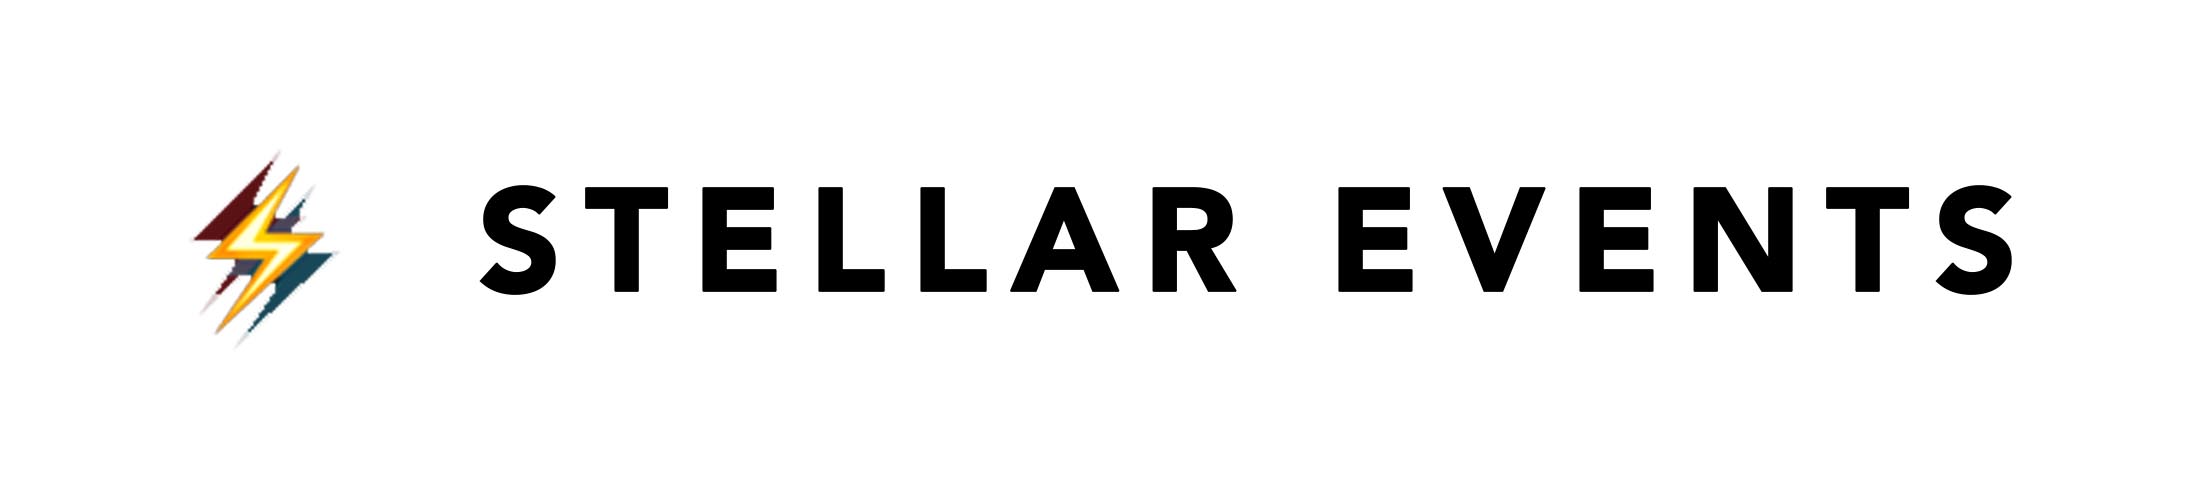 Copy of stellar logo black on white.jpg